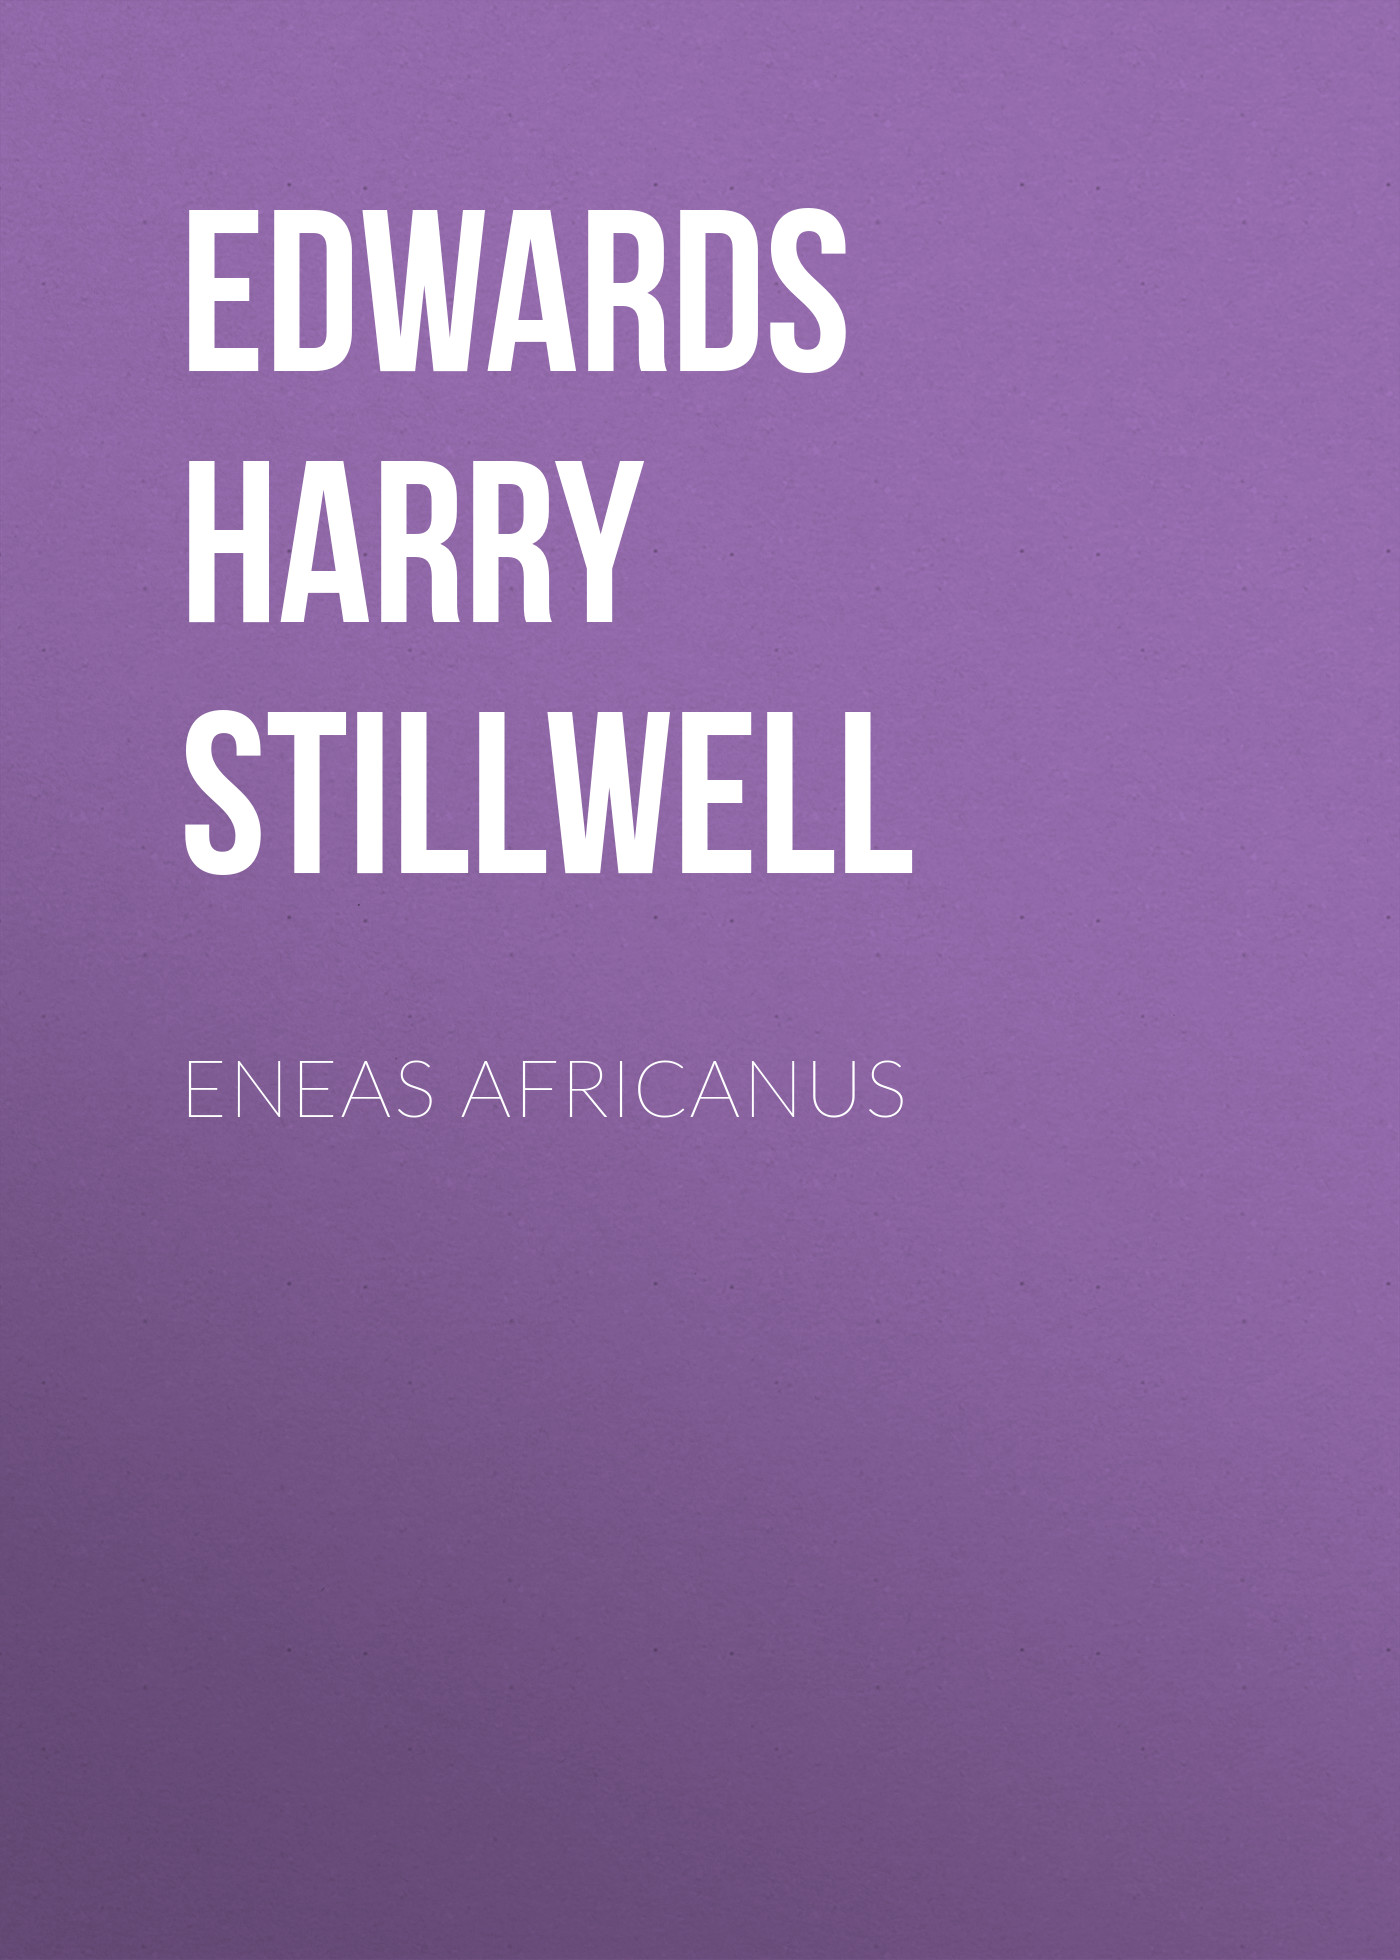 Книга Eneas Africanus из серии , созданная Harry Edwards, может относится к жанру Зарубежная старинная литература, Зарубежная классика. Стоимость электронной книги Eneas Africanus с идентификатором 24713945 составляет 0 руб.